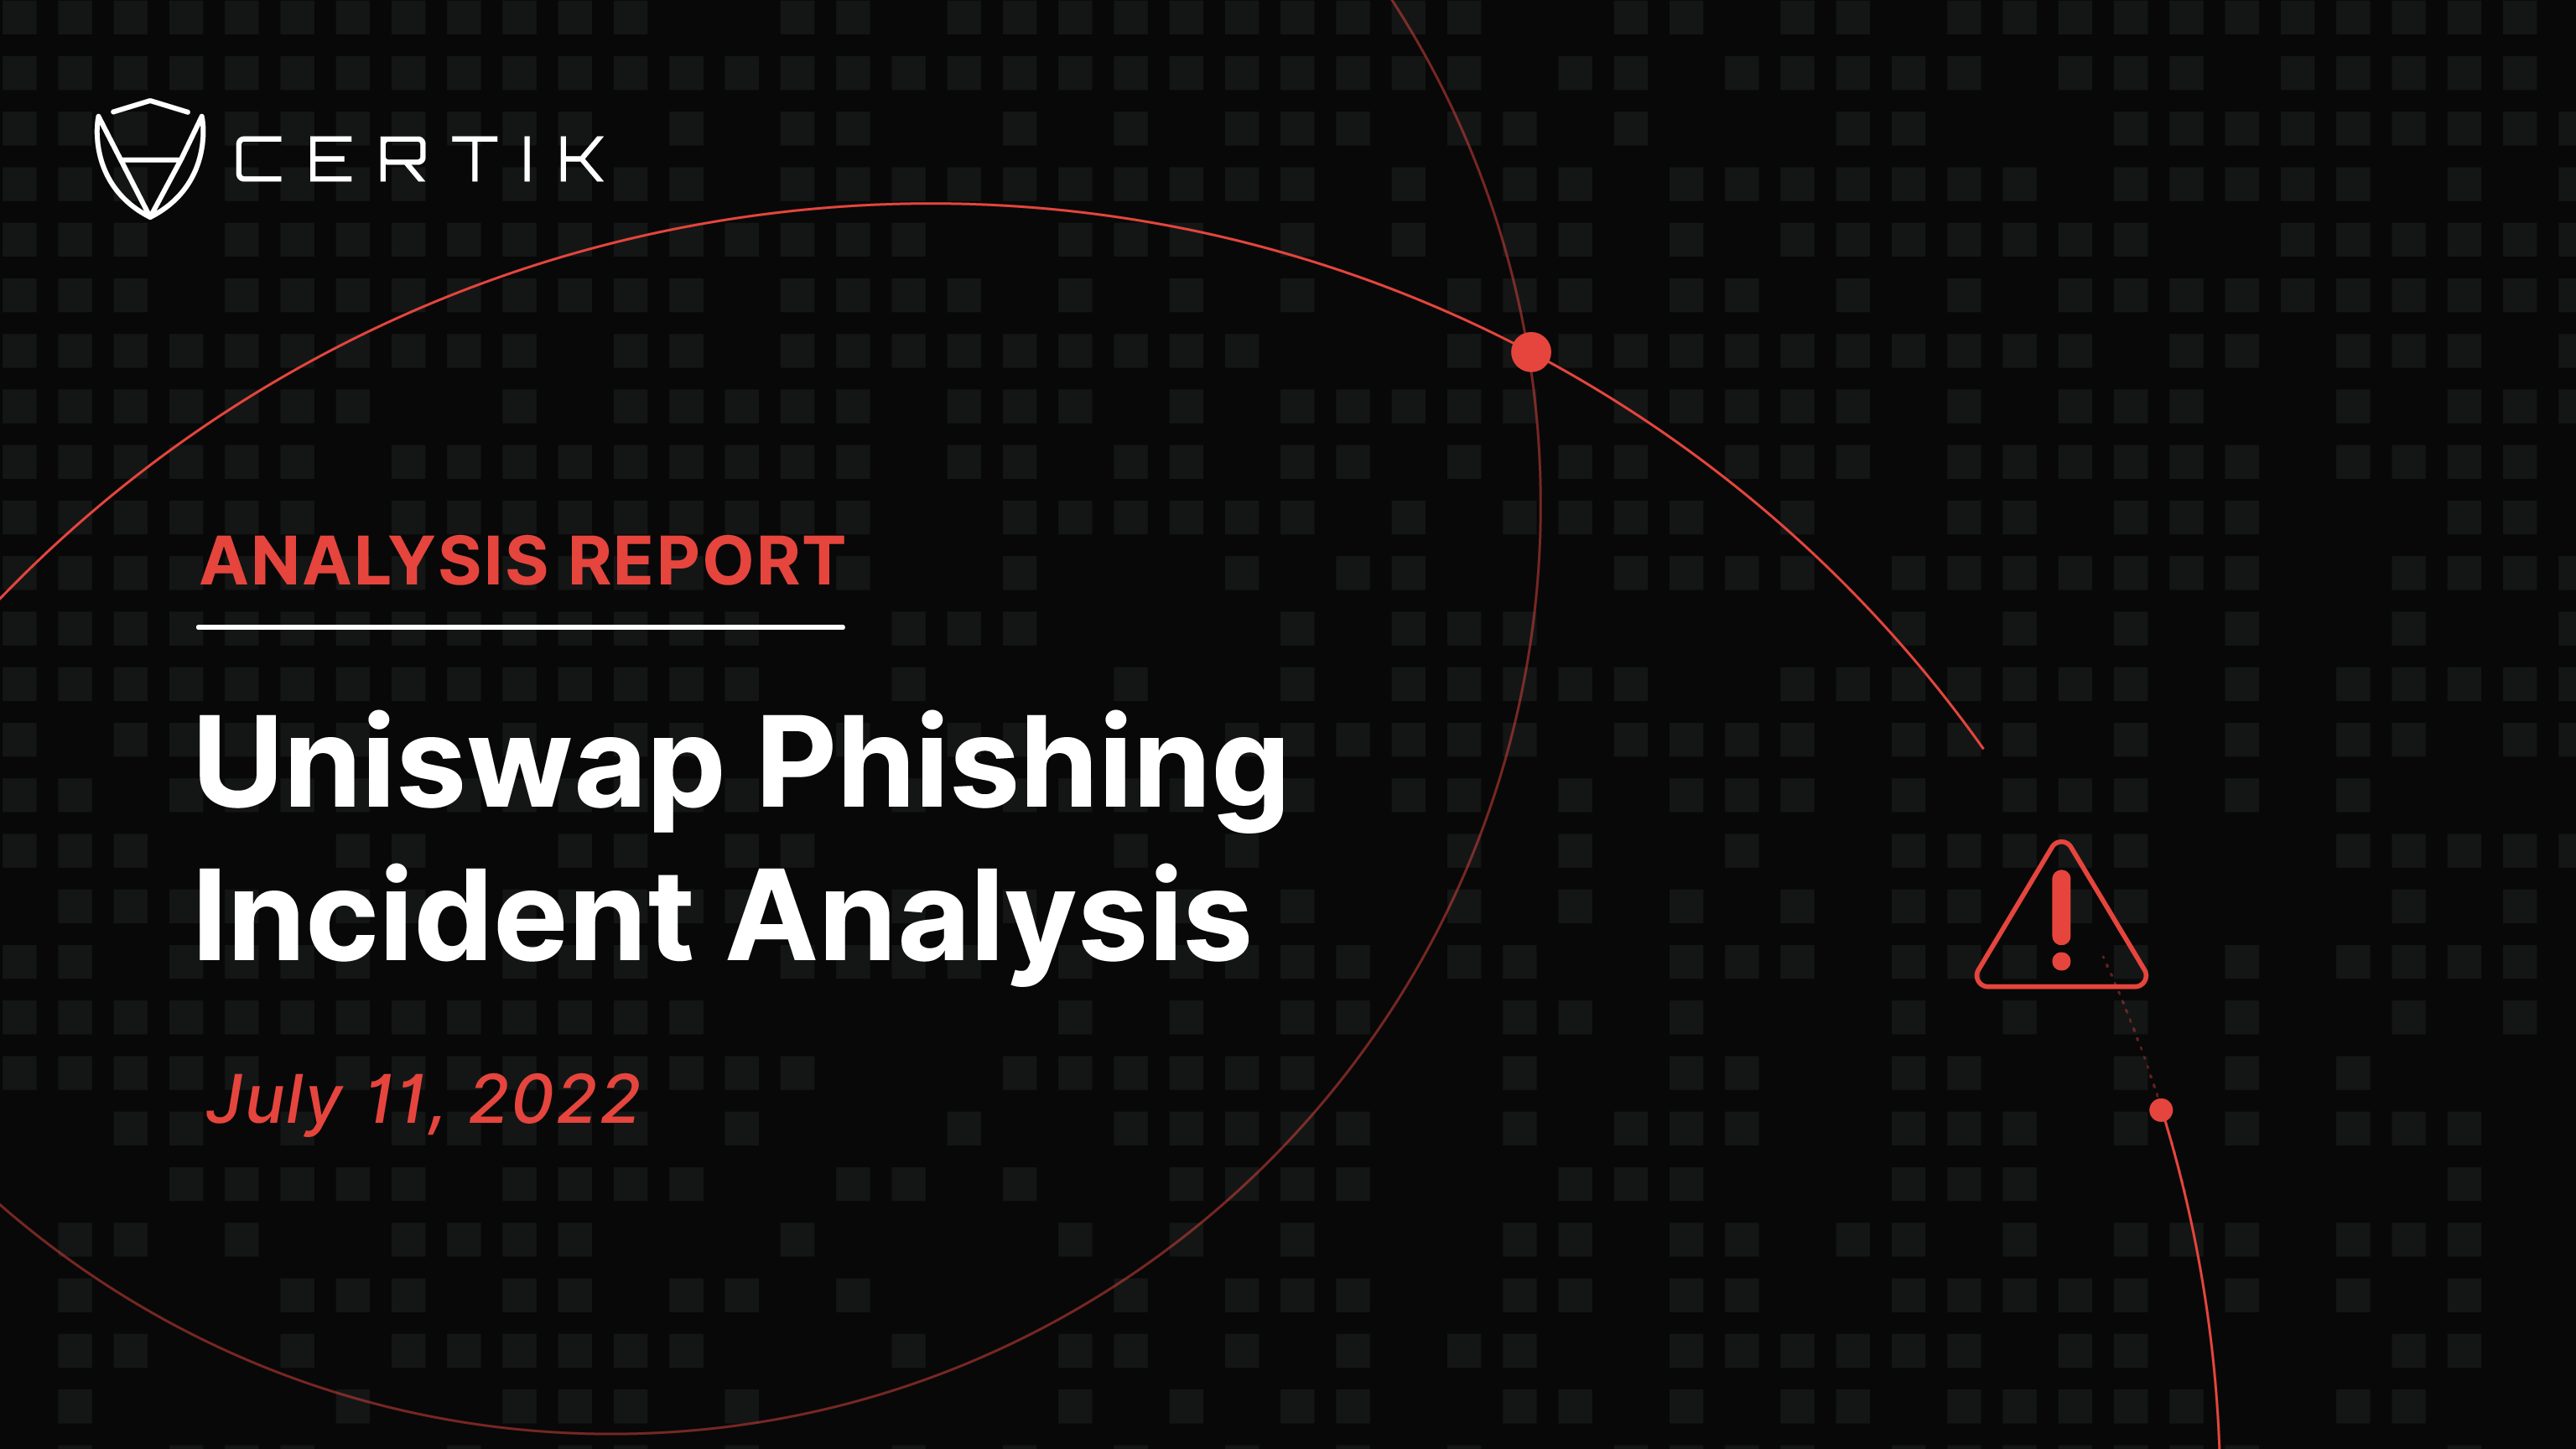 Uniswap Phishing Incident Analysis